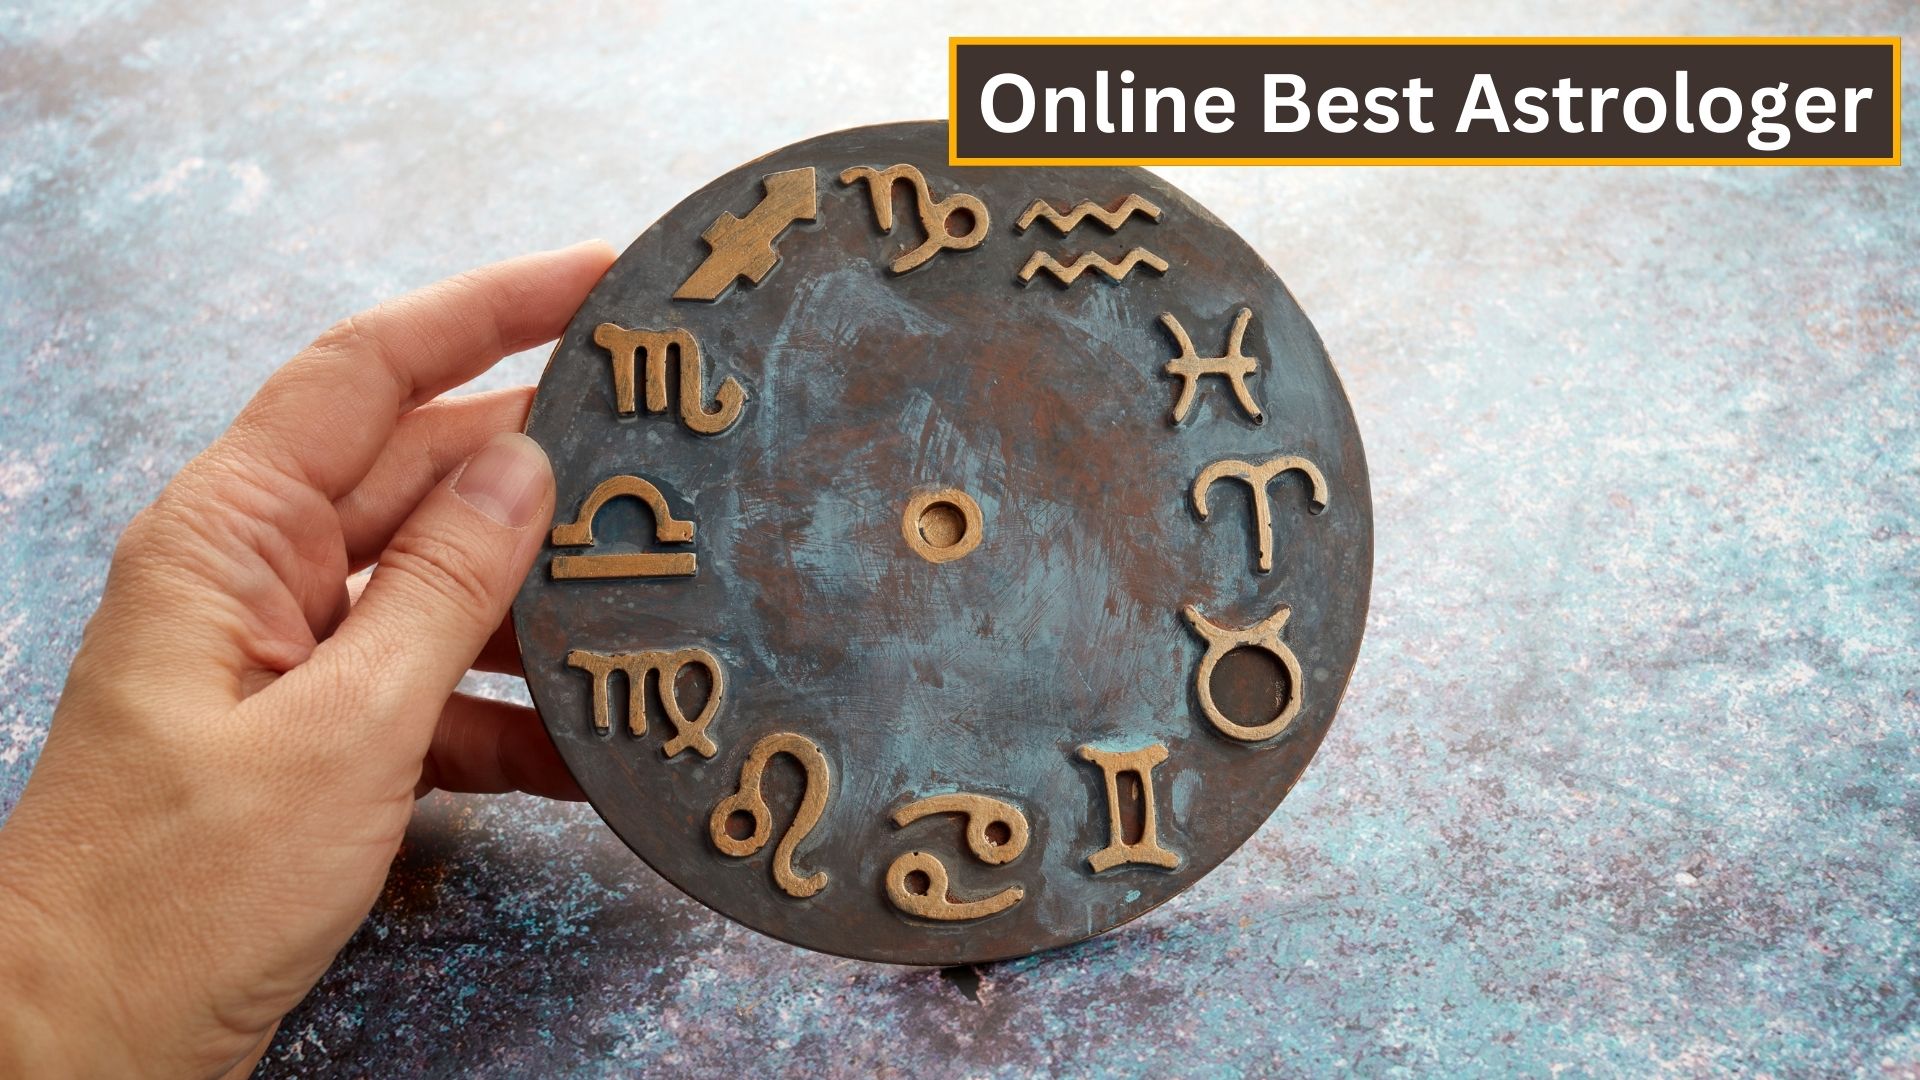 Online Best Astrologer